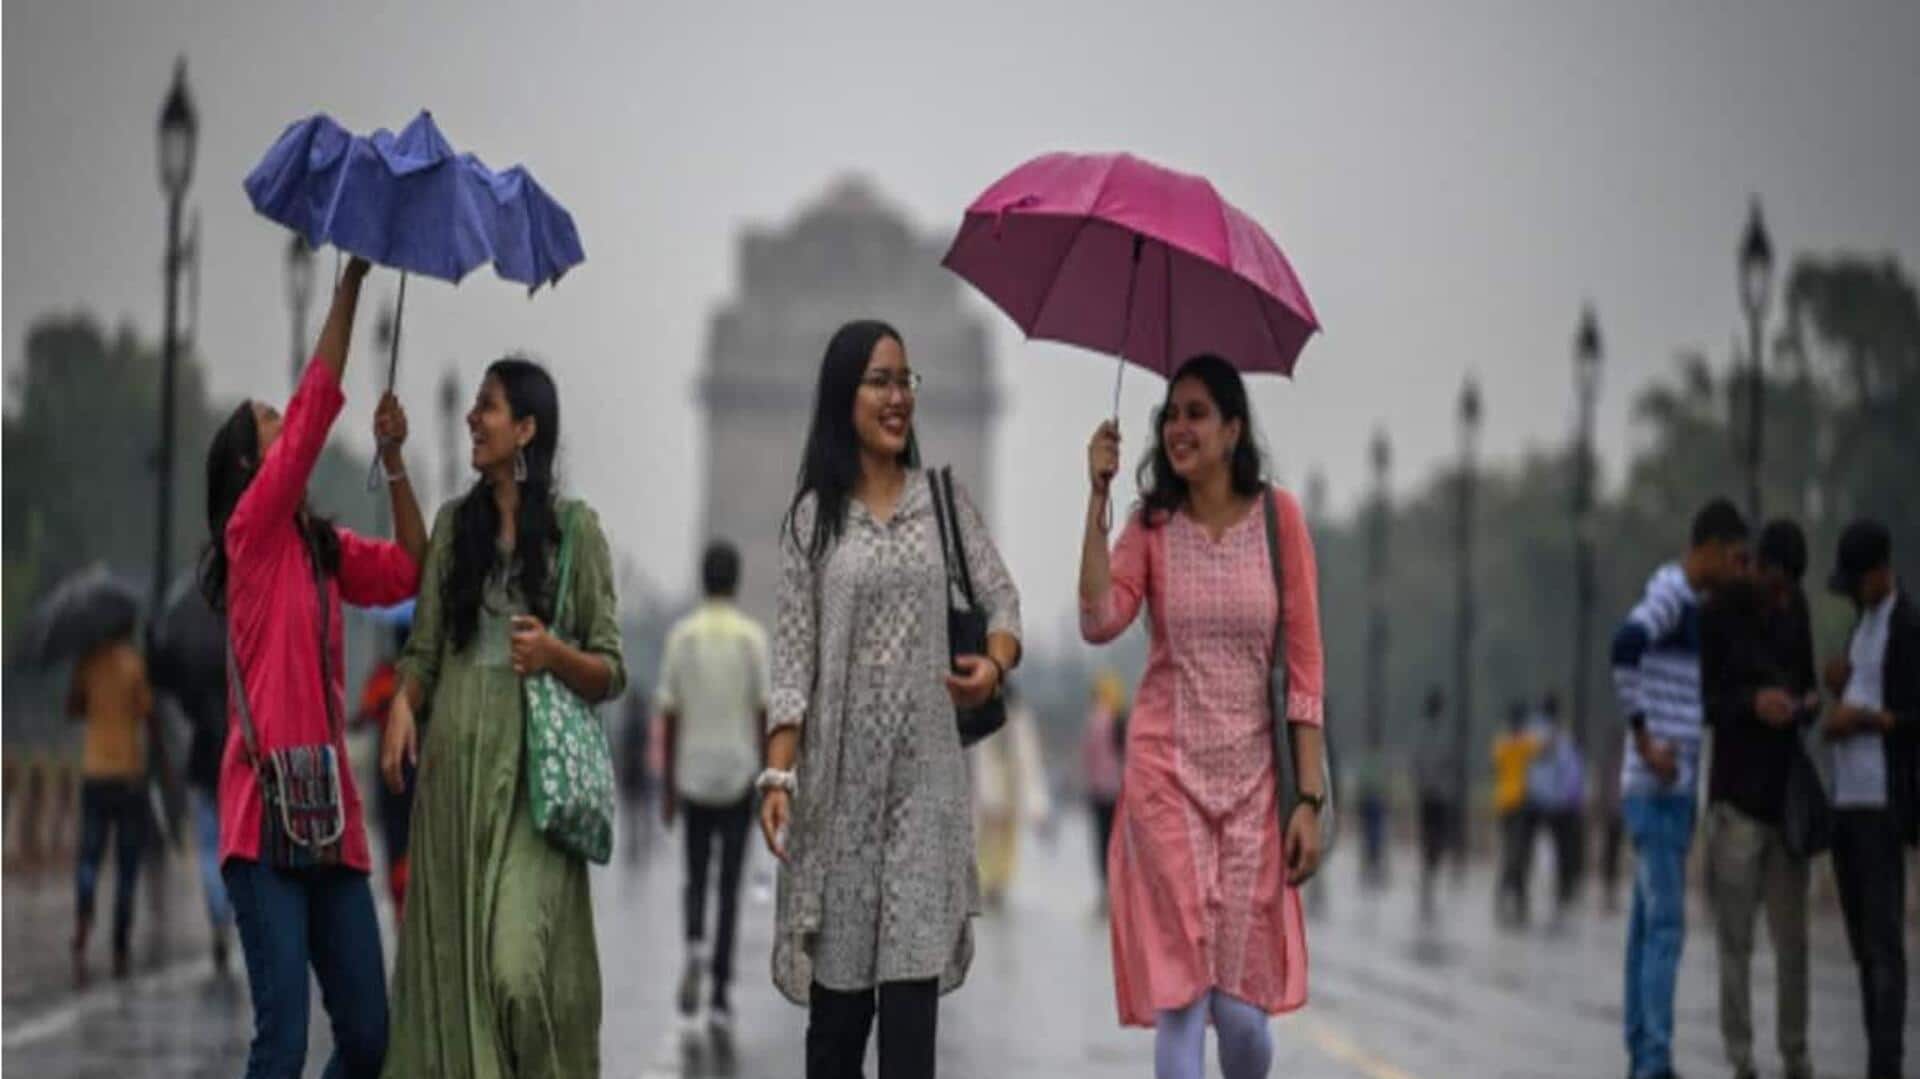 Monsoon: IMD శుభవార్త.. ఈ సంవత్సరం సాధారణం కంటే ఎక్కువగా వర్షపాతం 